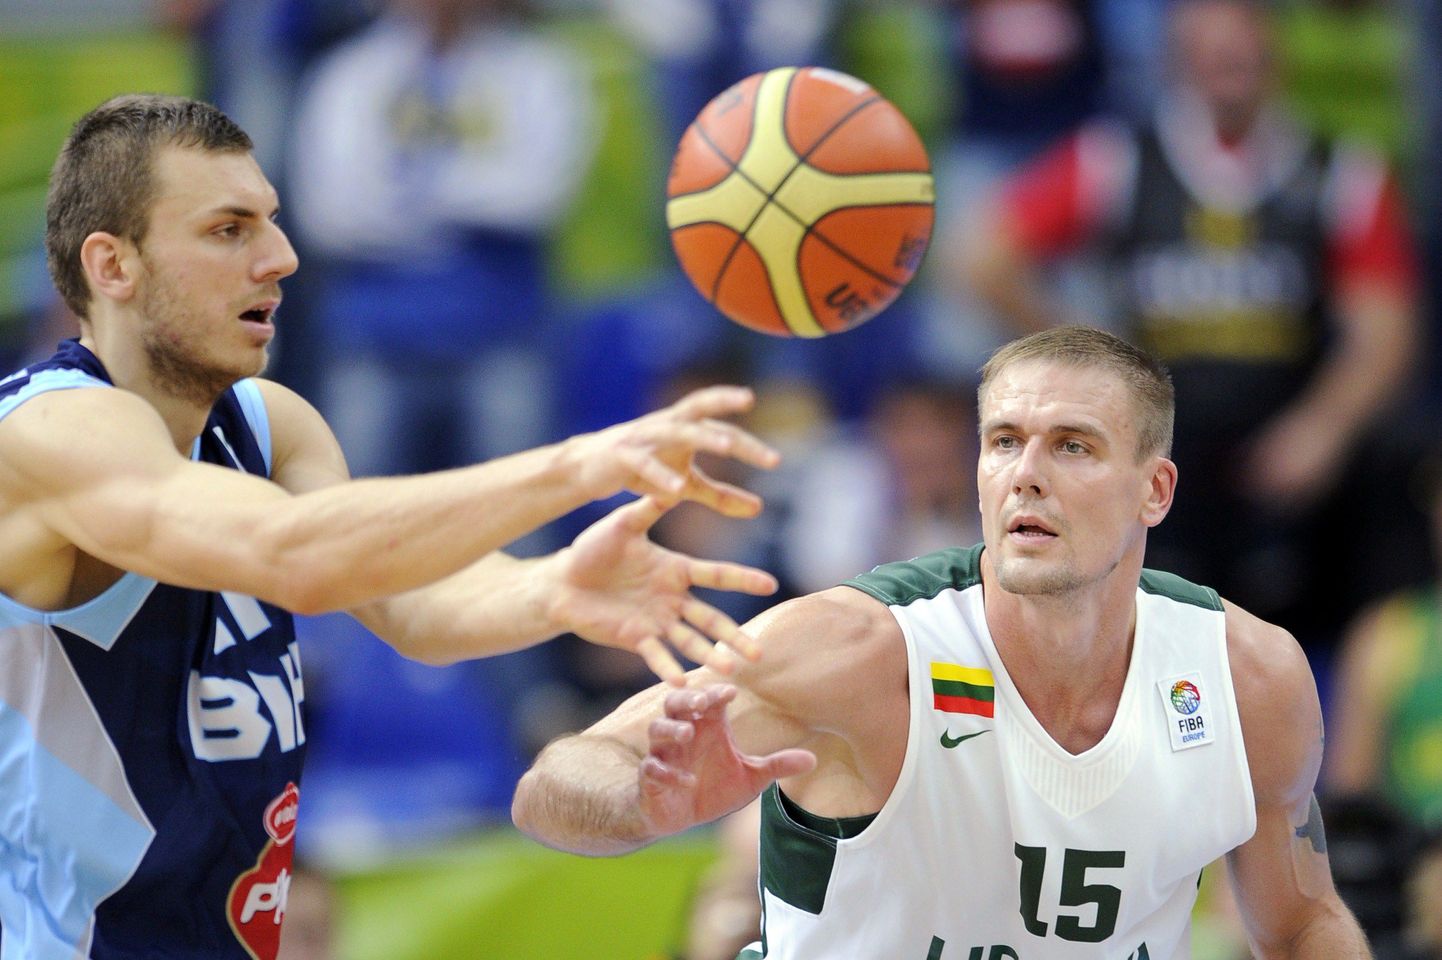 Leedu korvpallikoondis (paremal Robertas Javtokas) mängis poolehoidjate närvidel, kuid pääses siiski EMil 12 parema sekka.